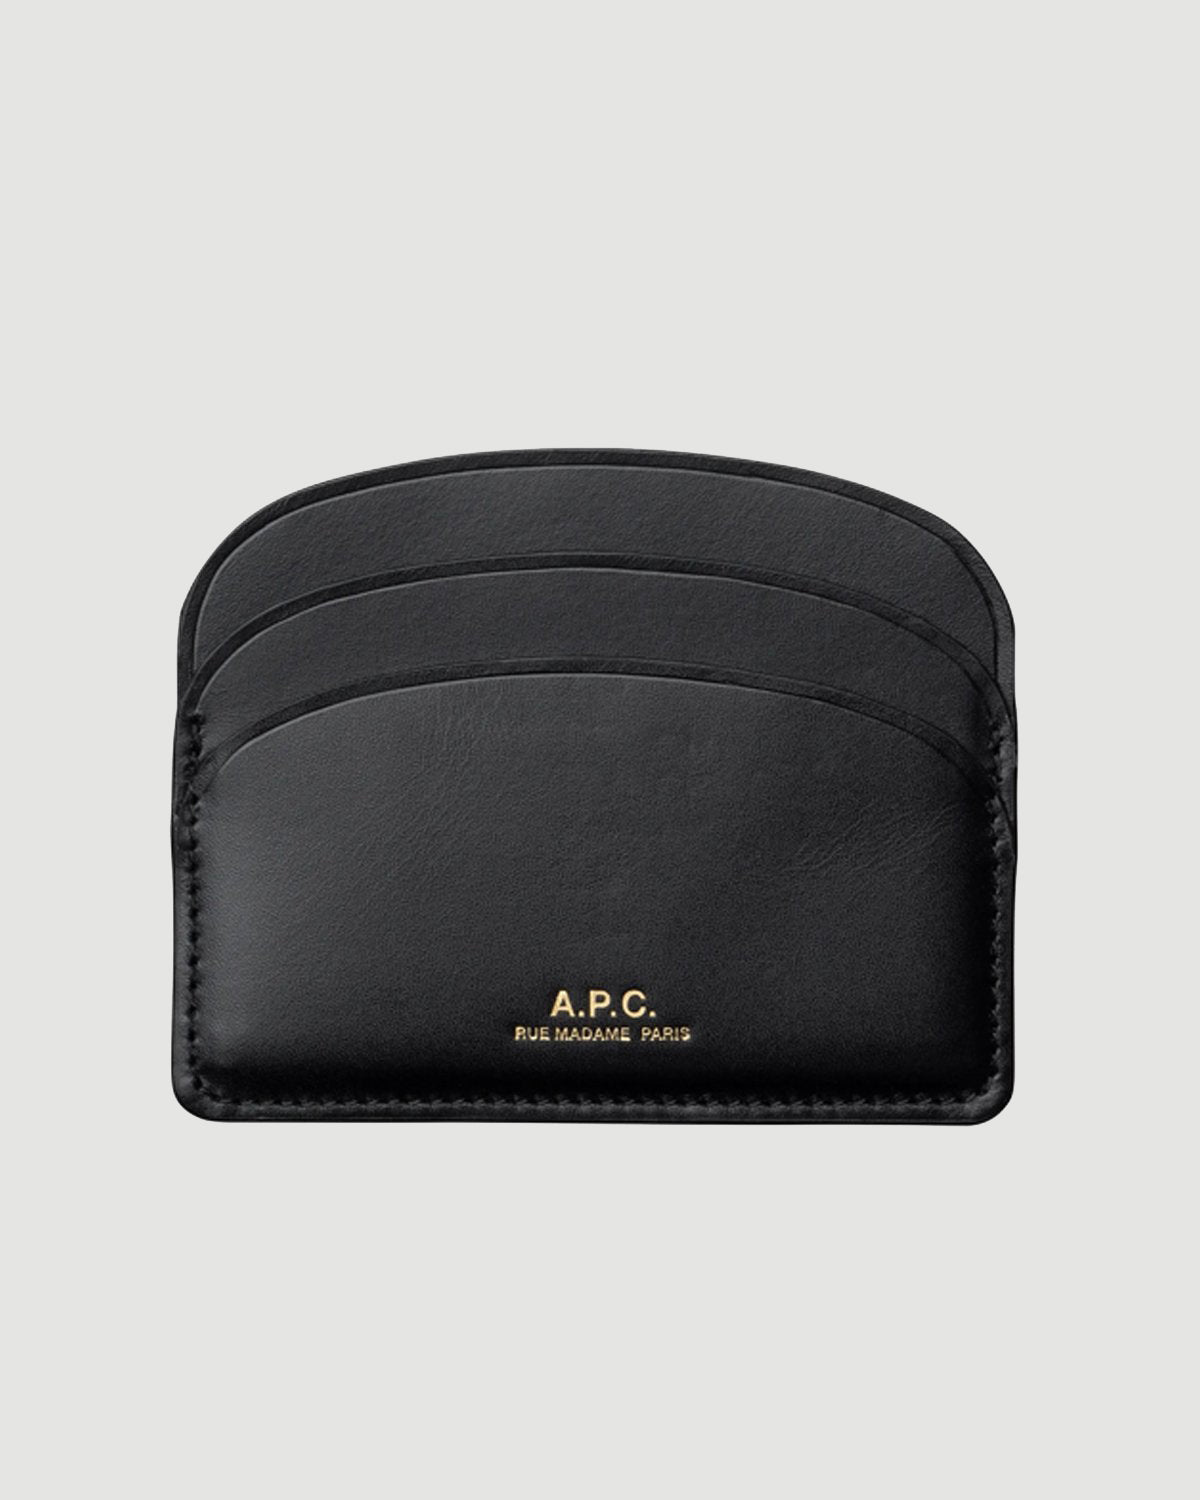 A.P.C. Demi-lune Porte-cartes Black Leather Goods